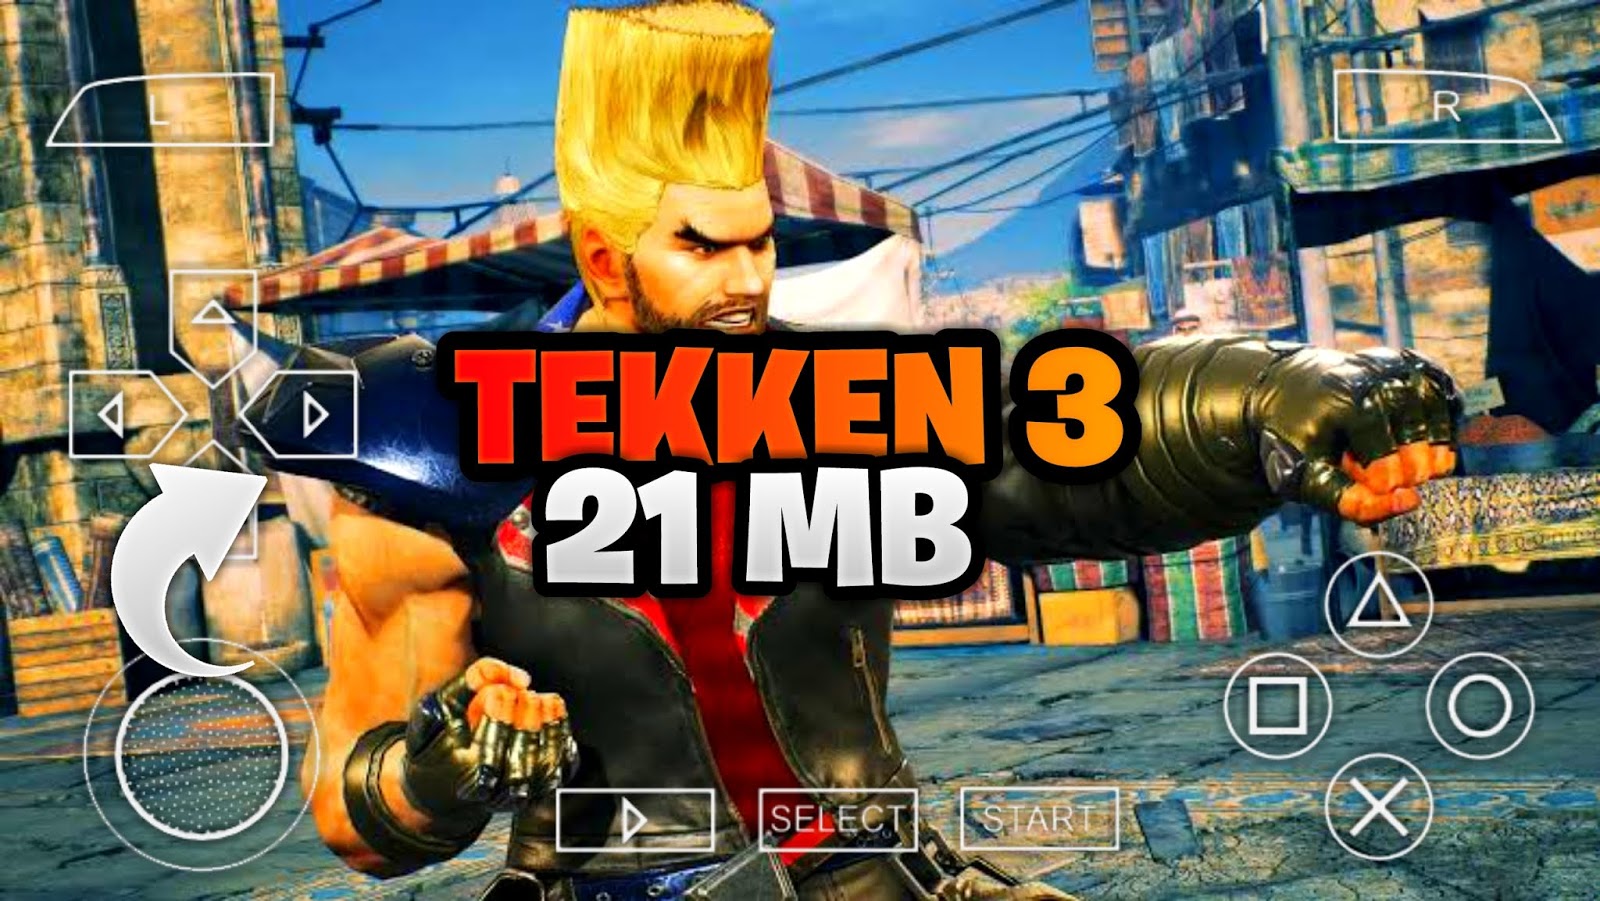 install tekken 3 game download